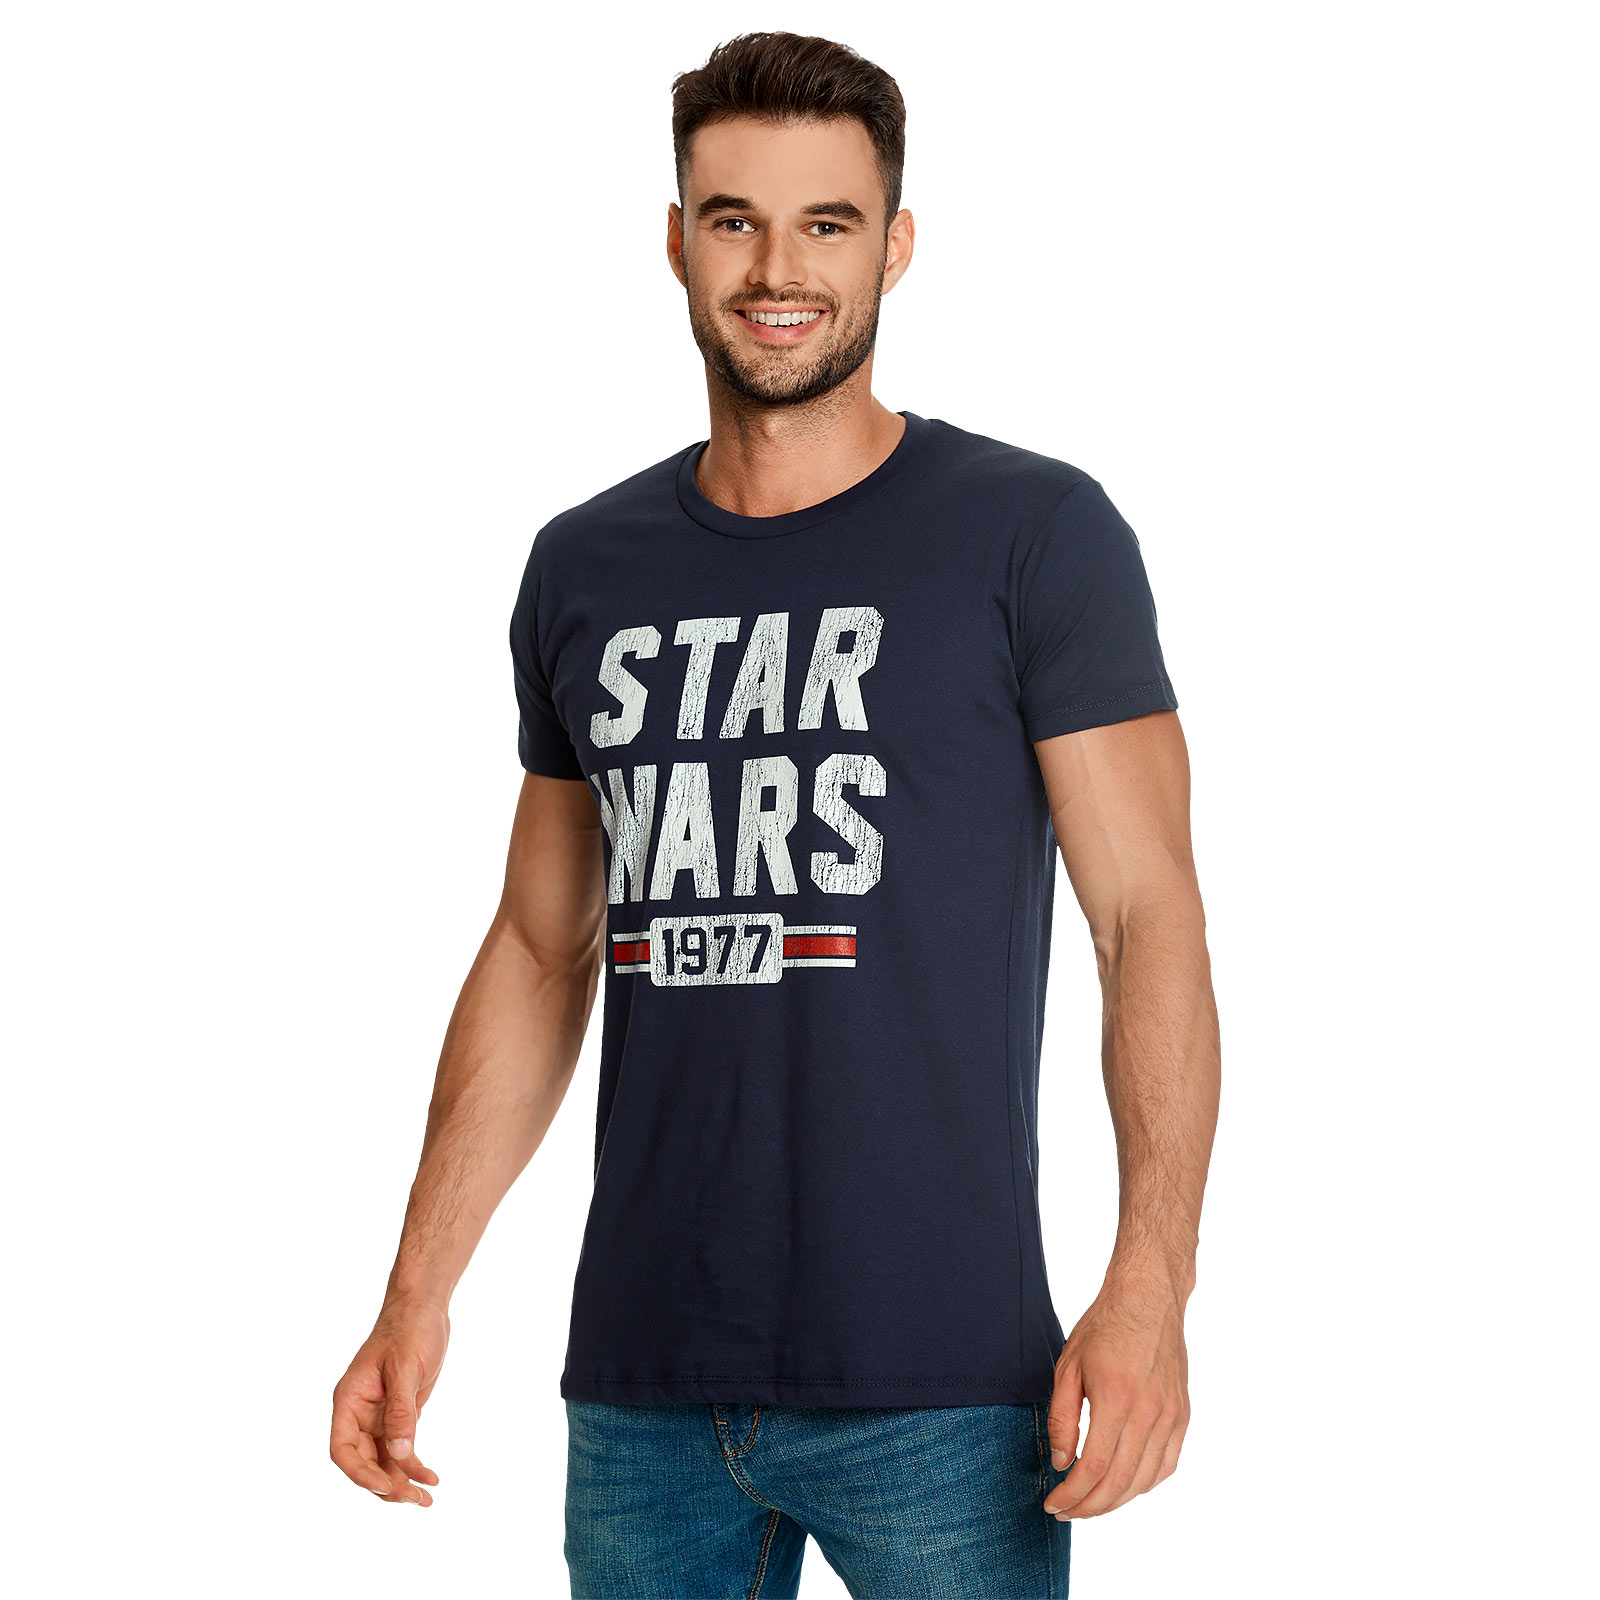 Star Wars van 1977 Distressed T-shirt blauw